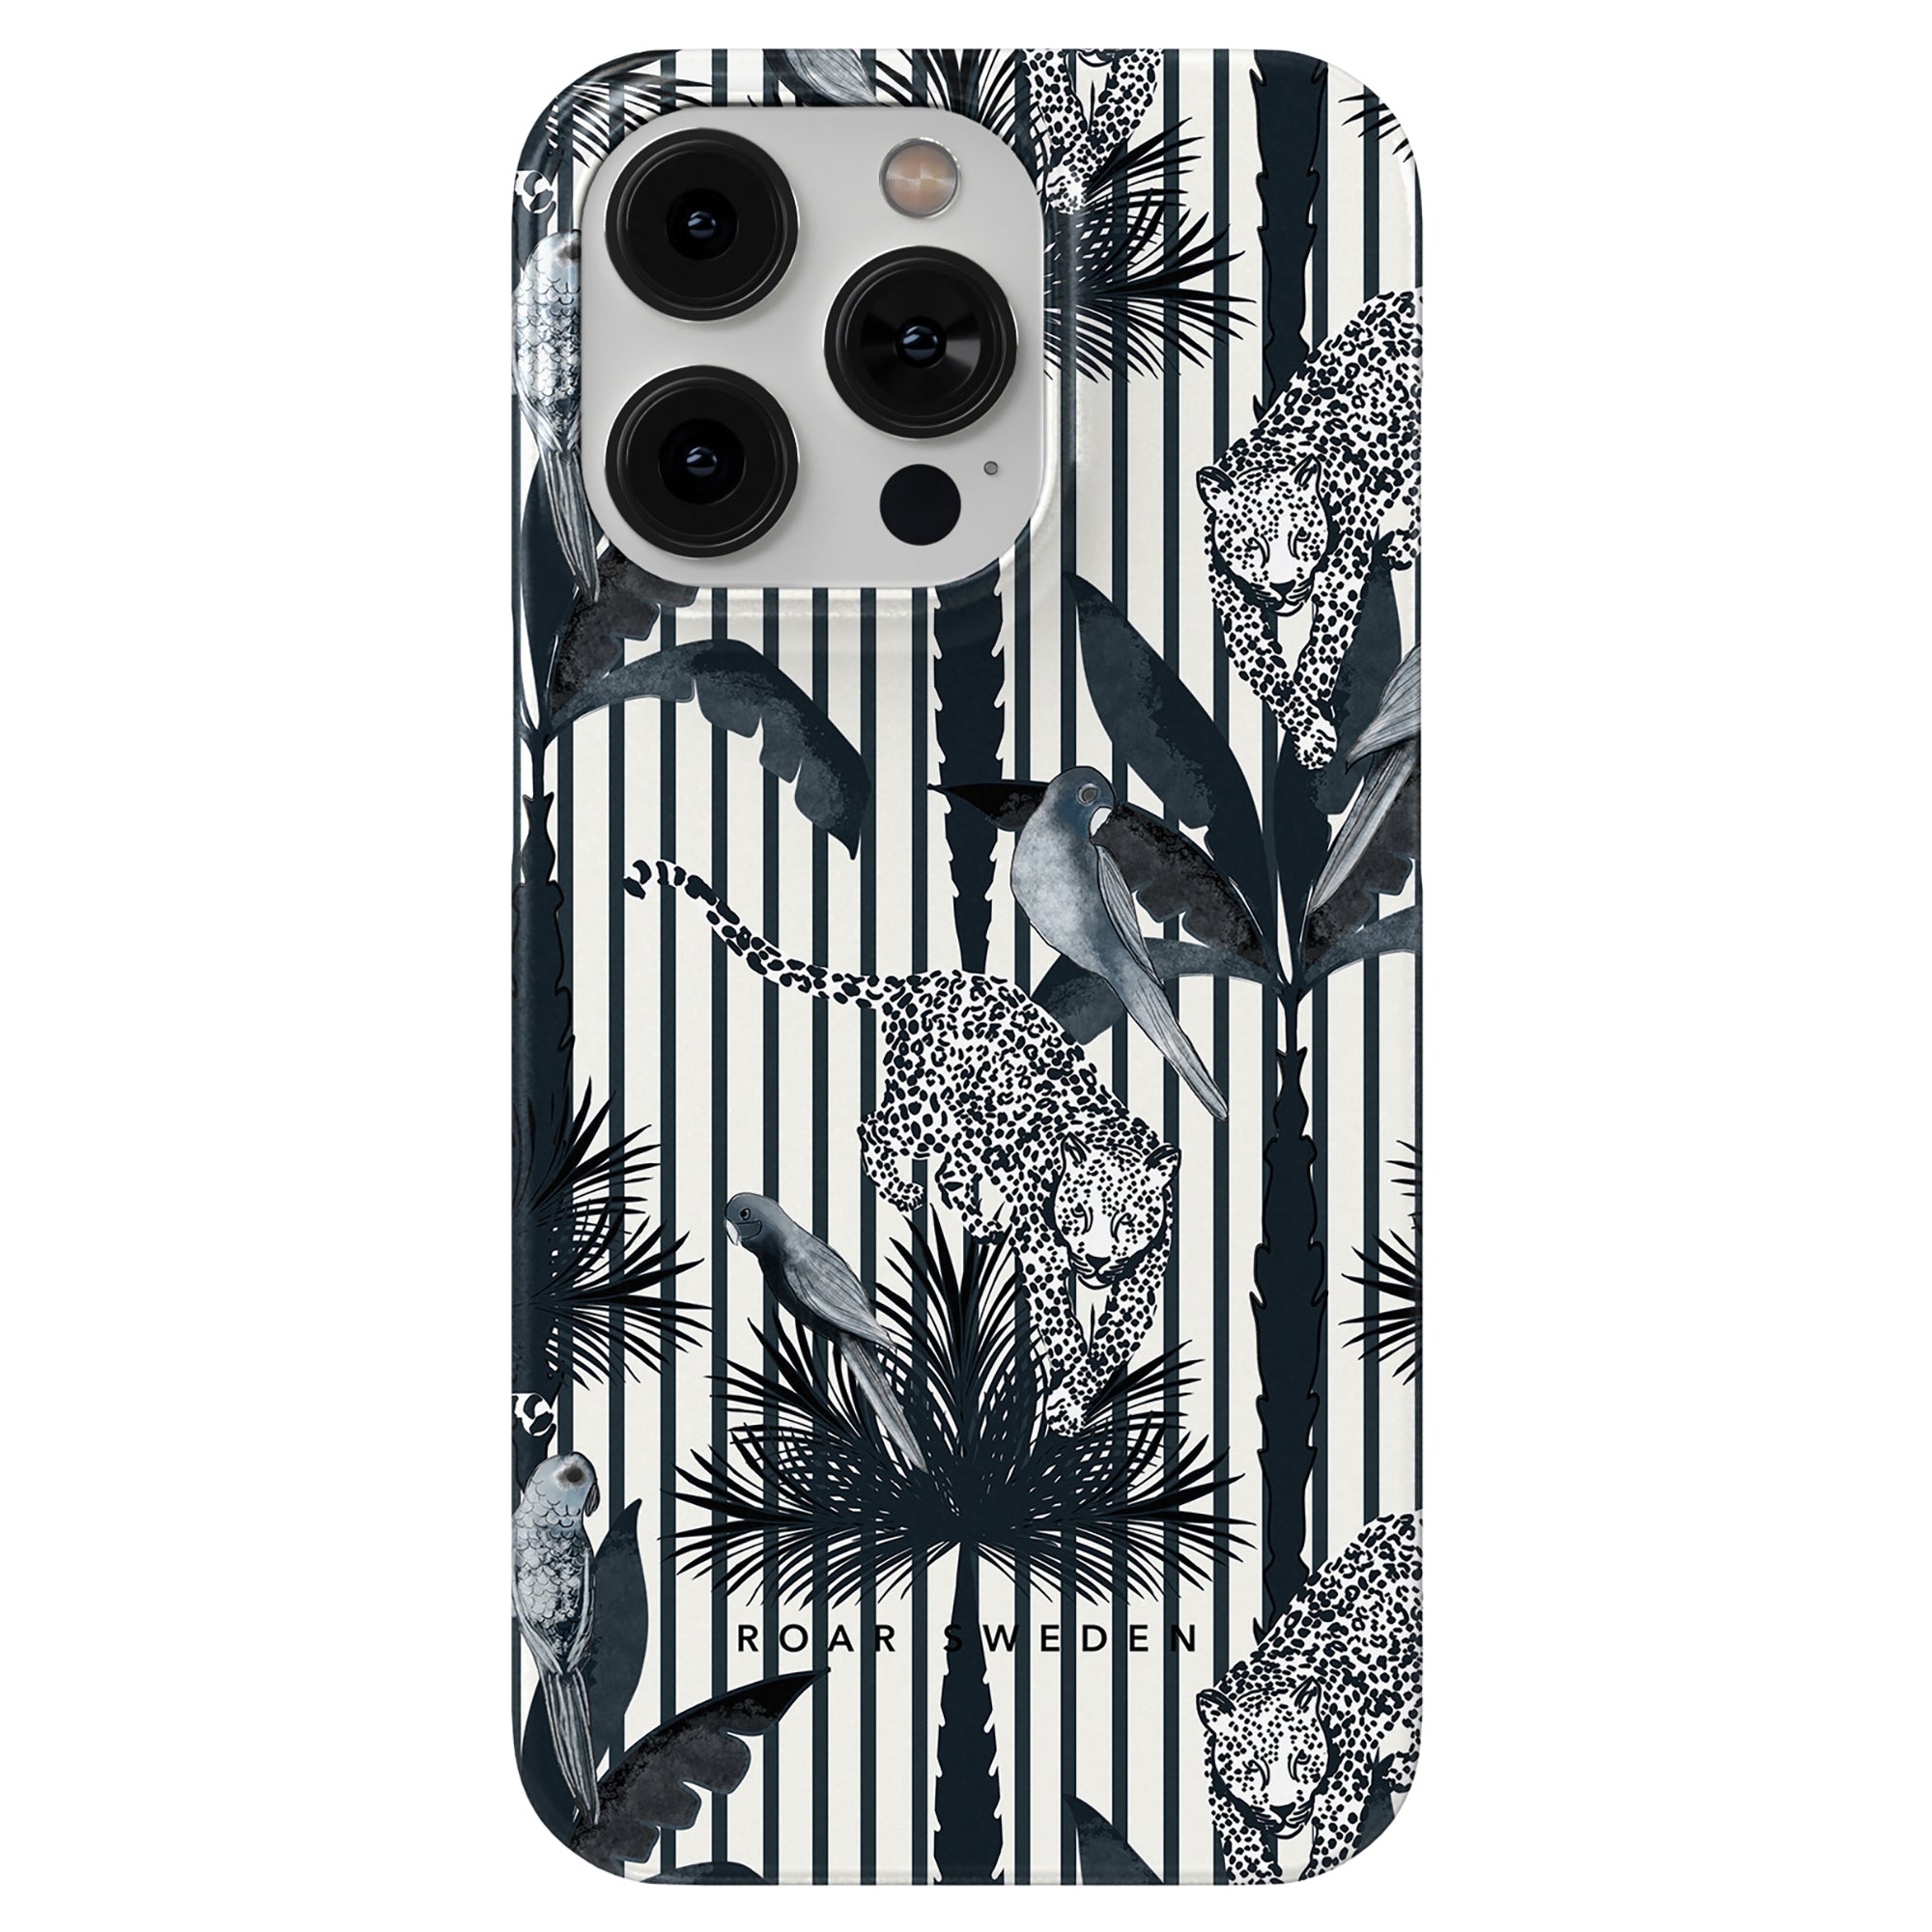 Ett svartvitt Pardus - Slim fodral med leopard och palmer, designat för att passa en smartphone.